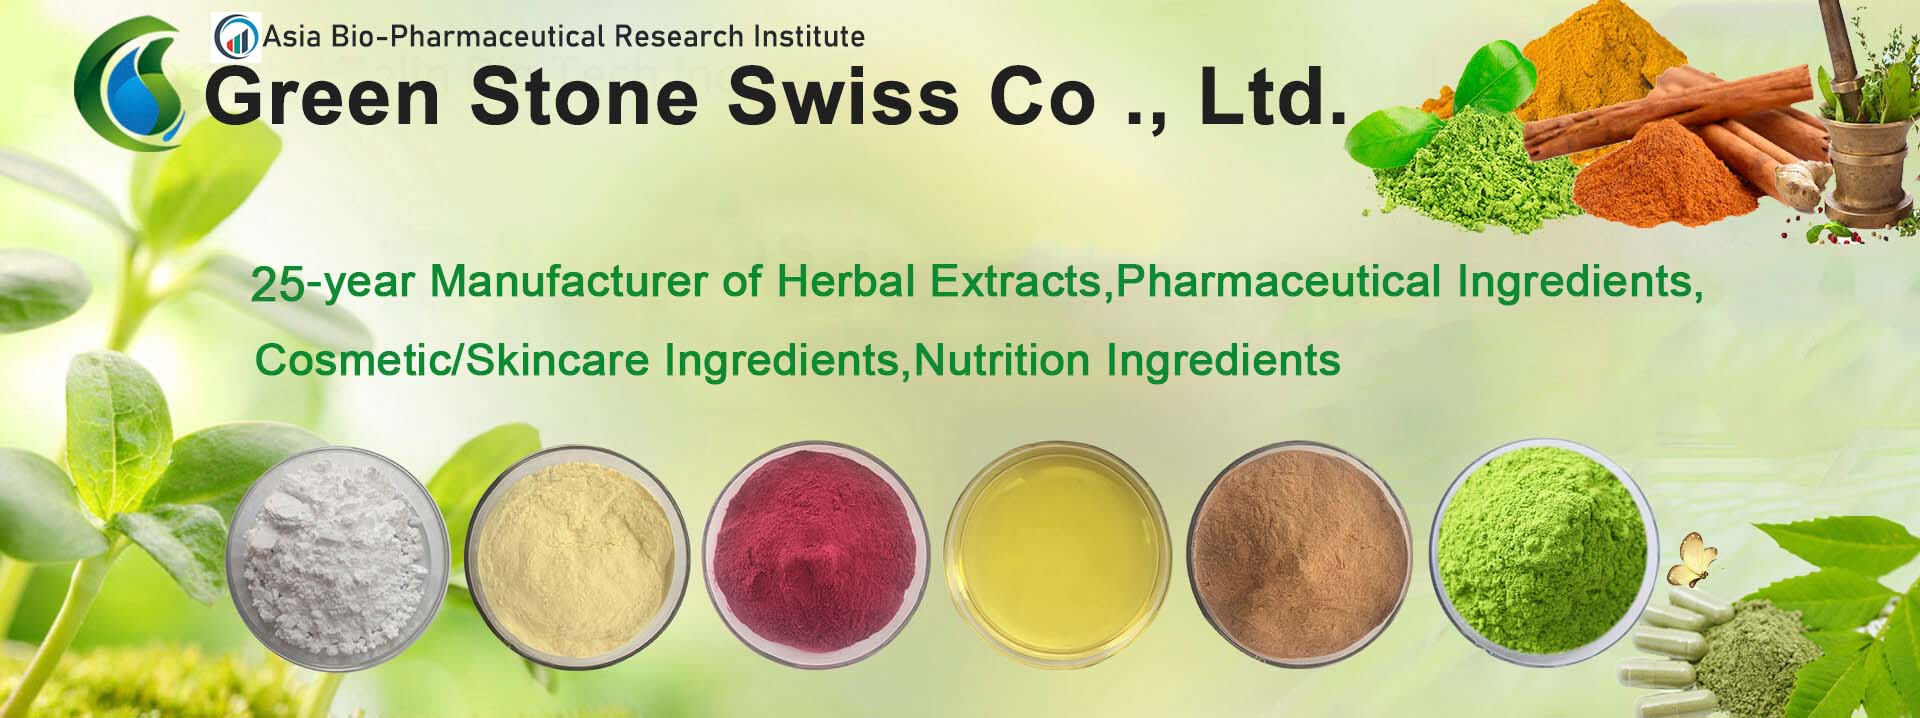 ハーブエキス、医薬品成分、化粧品/スキンケア成分、栄養成分の25年のメーカー